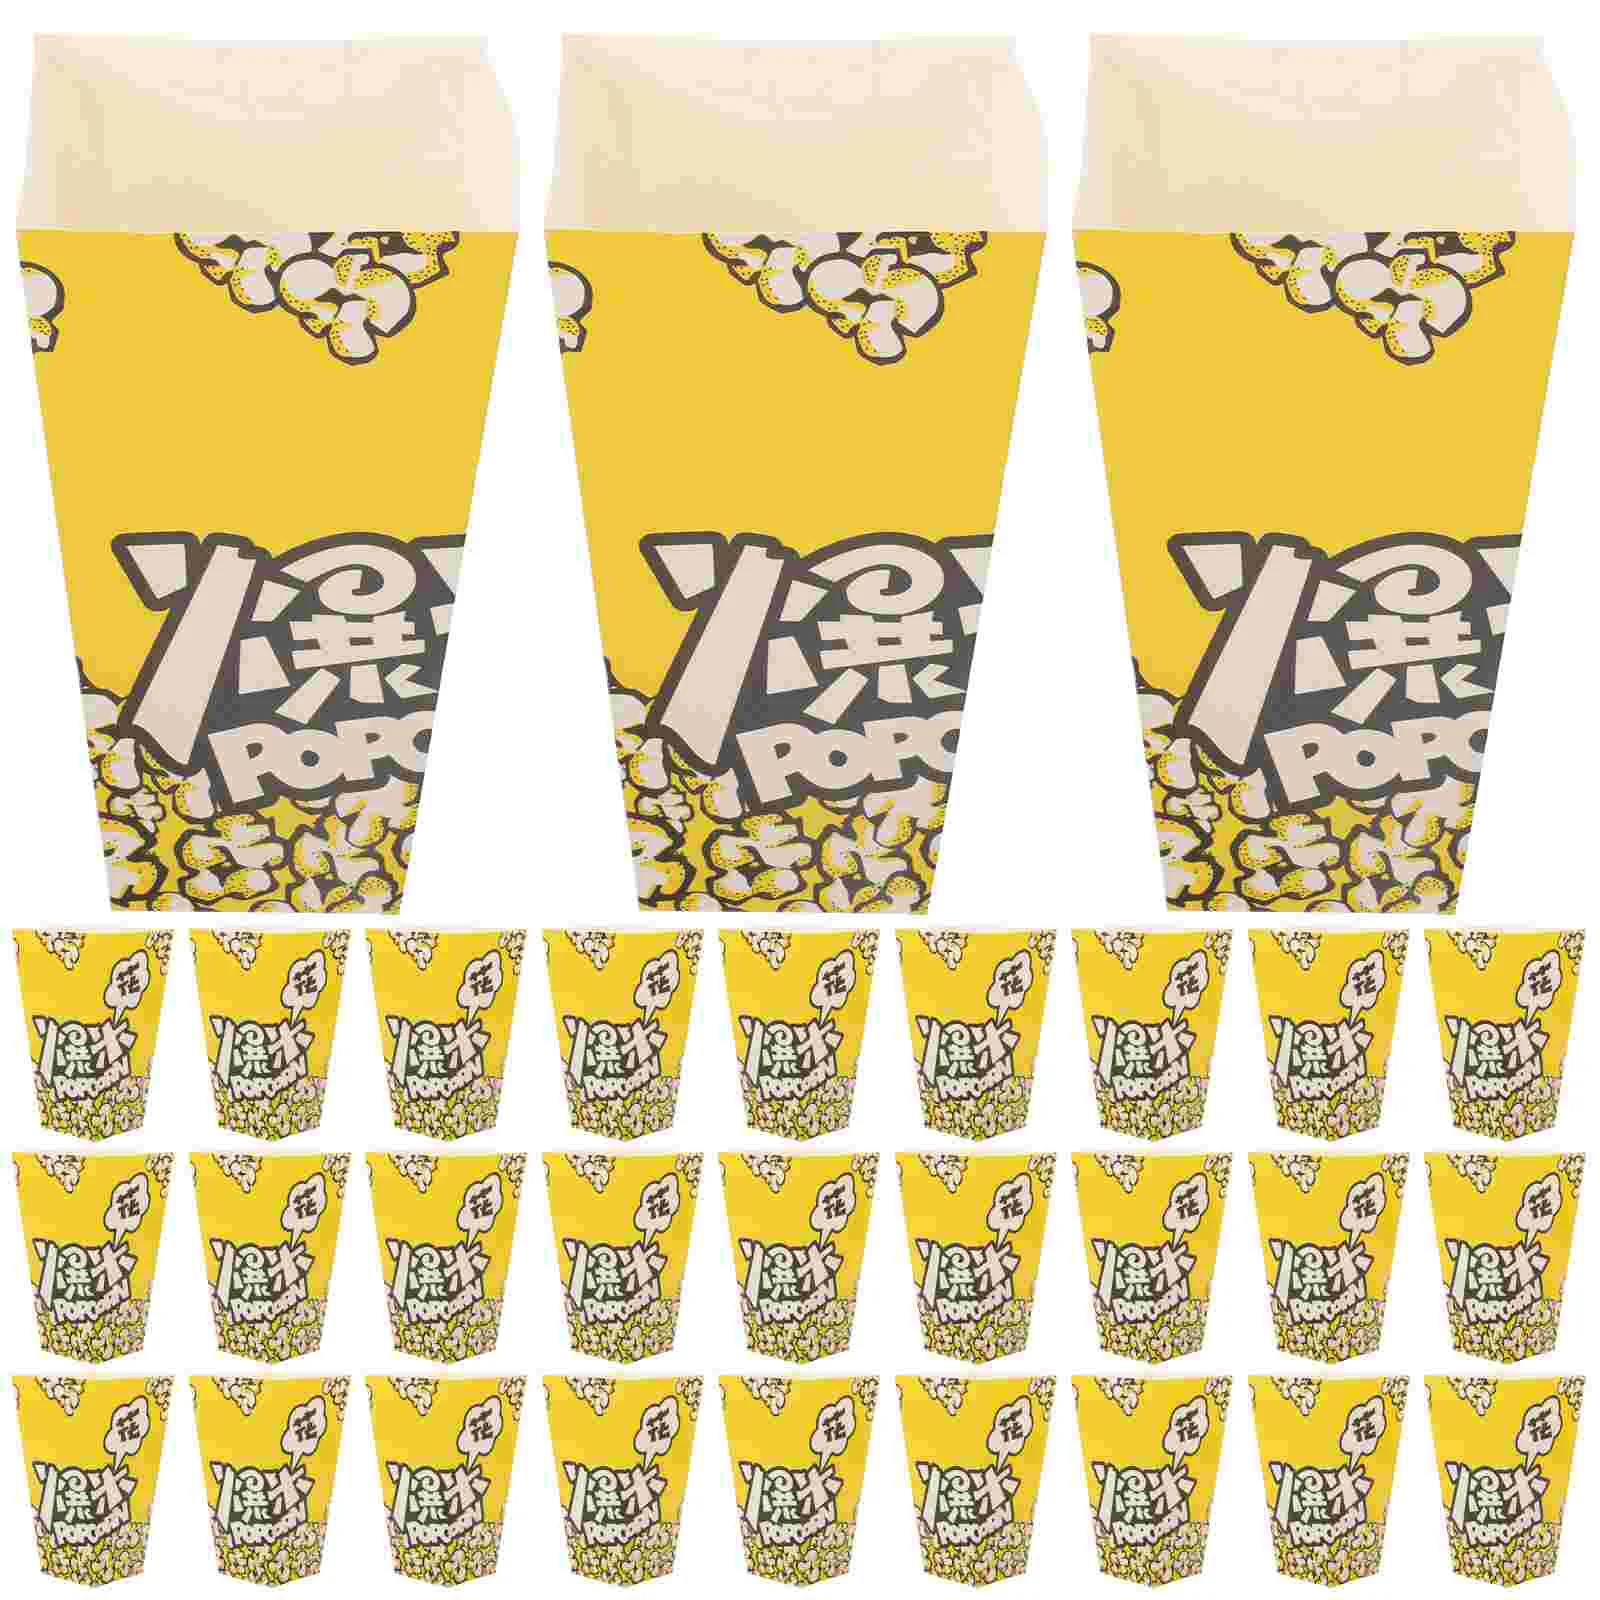 

100 шт. картонные чашки для попкорна, одноразовые бумажные чашки, Стандартные Контейнеры, Сервировочные чашки, белый картон